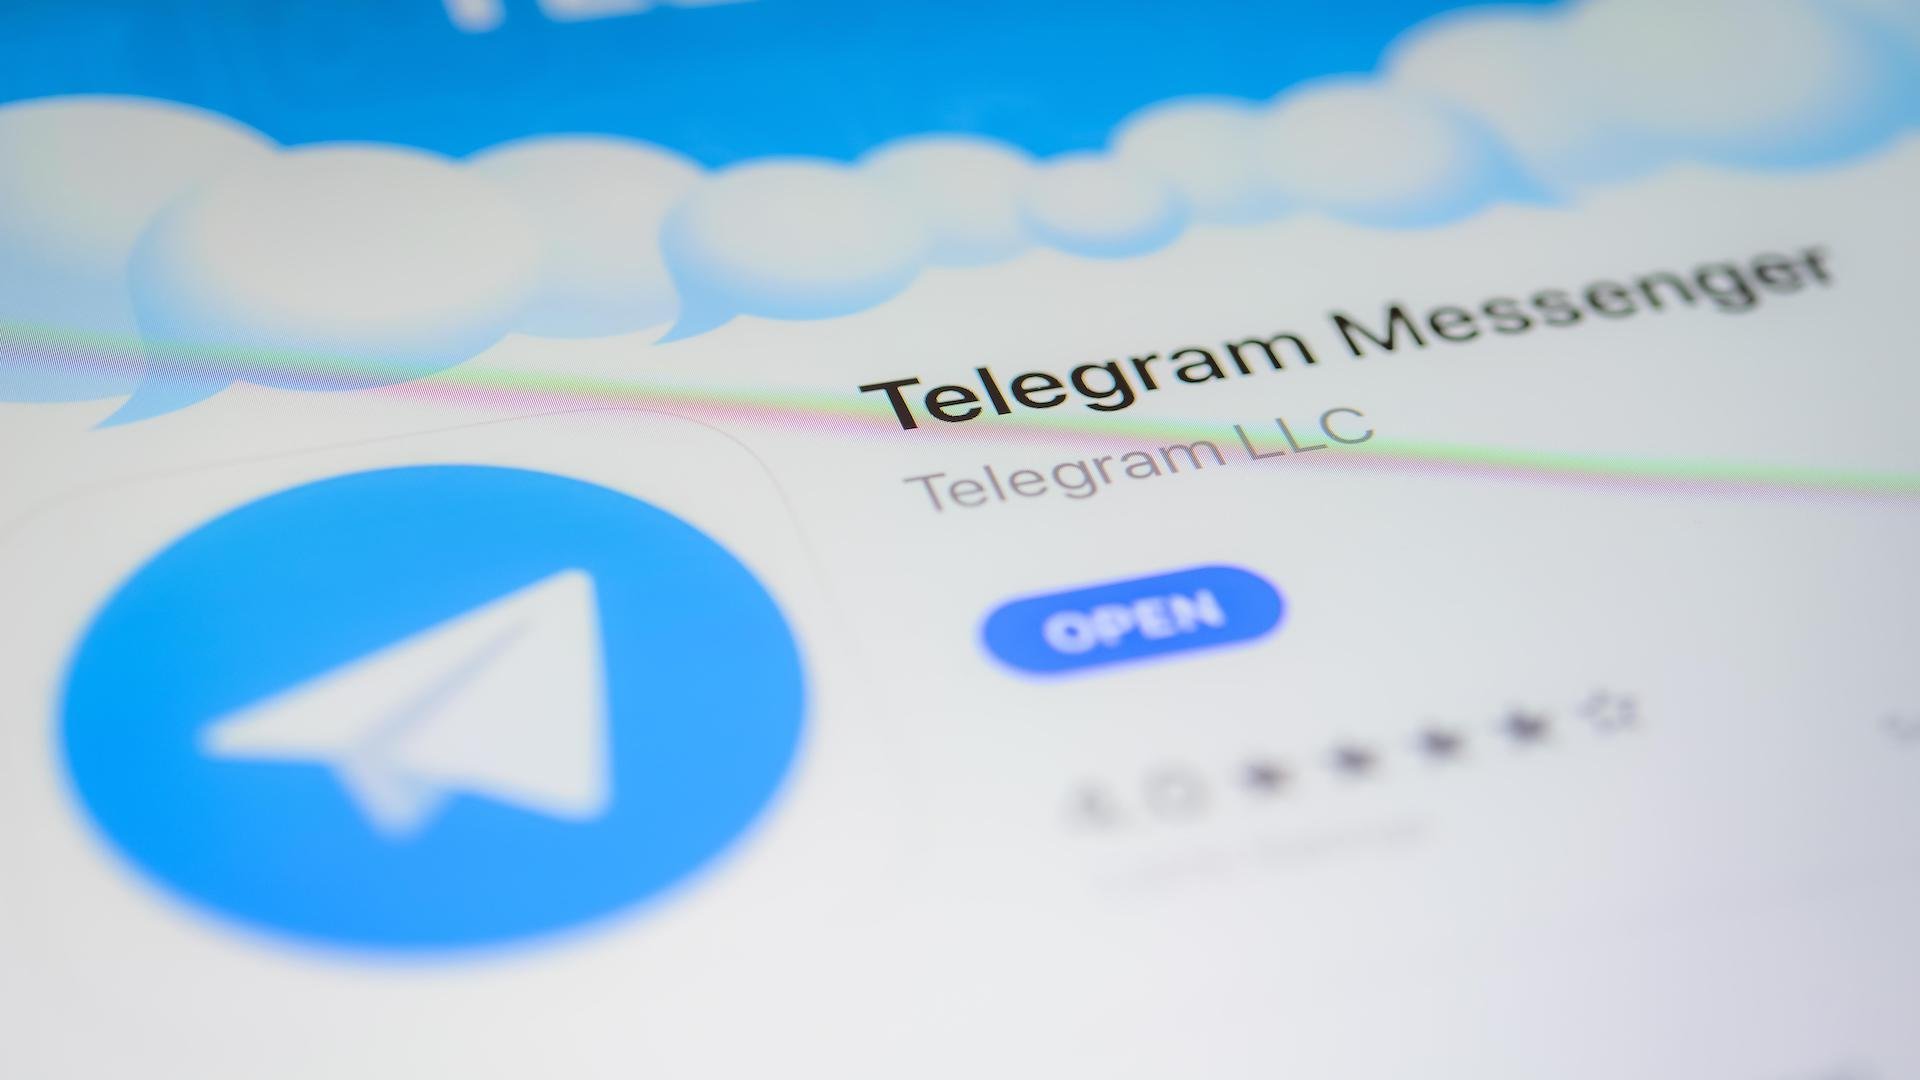 Обновить телеграмм на андроид до последней версии бесплатно на русском языке фото 83